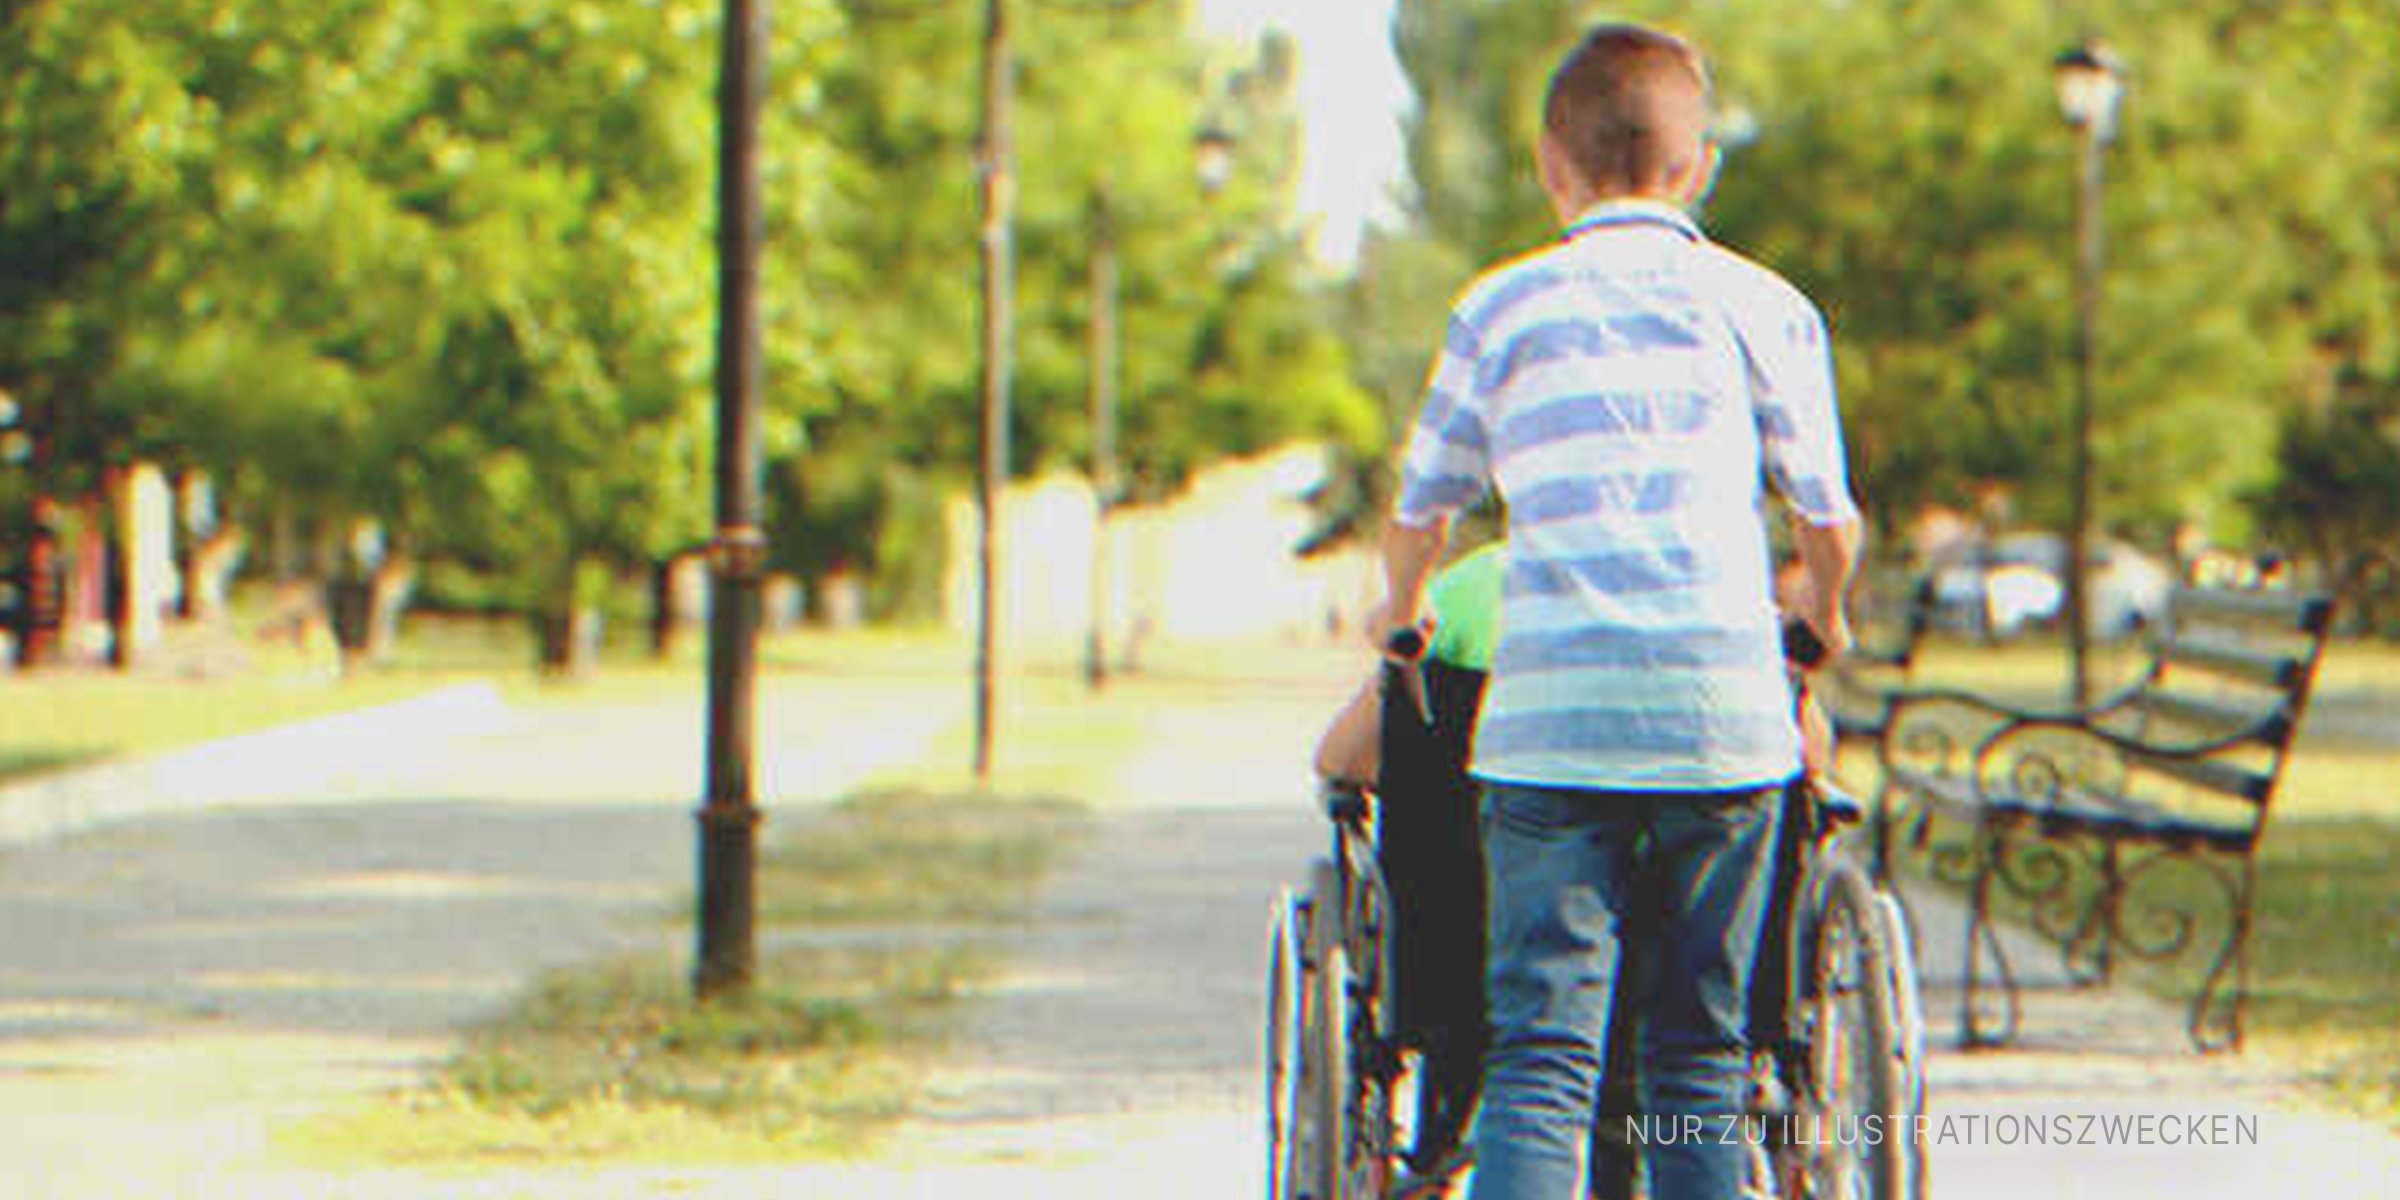 Junge schiebt jemanden im Rollstuhl | Quelle: Shutterstock.com